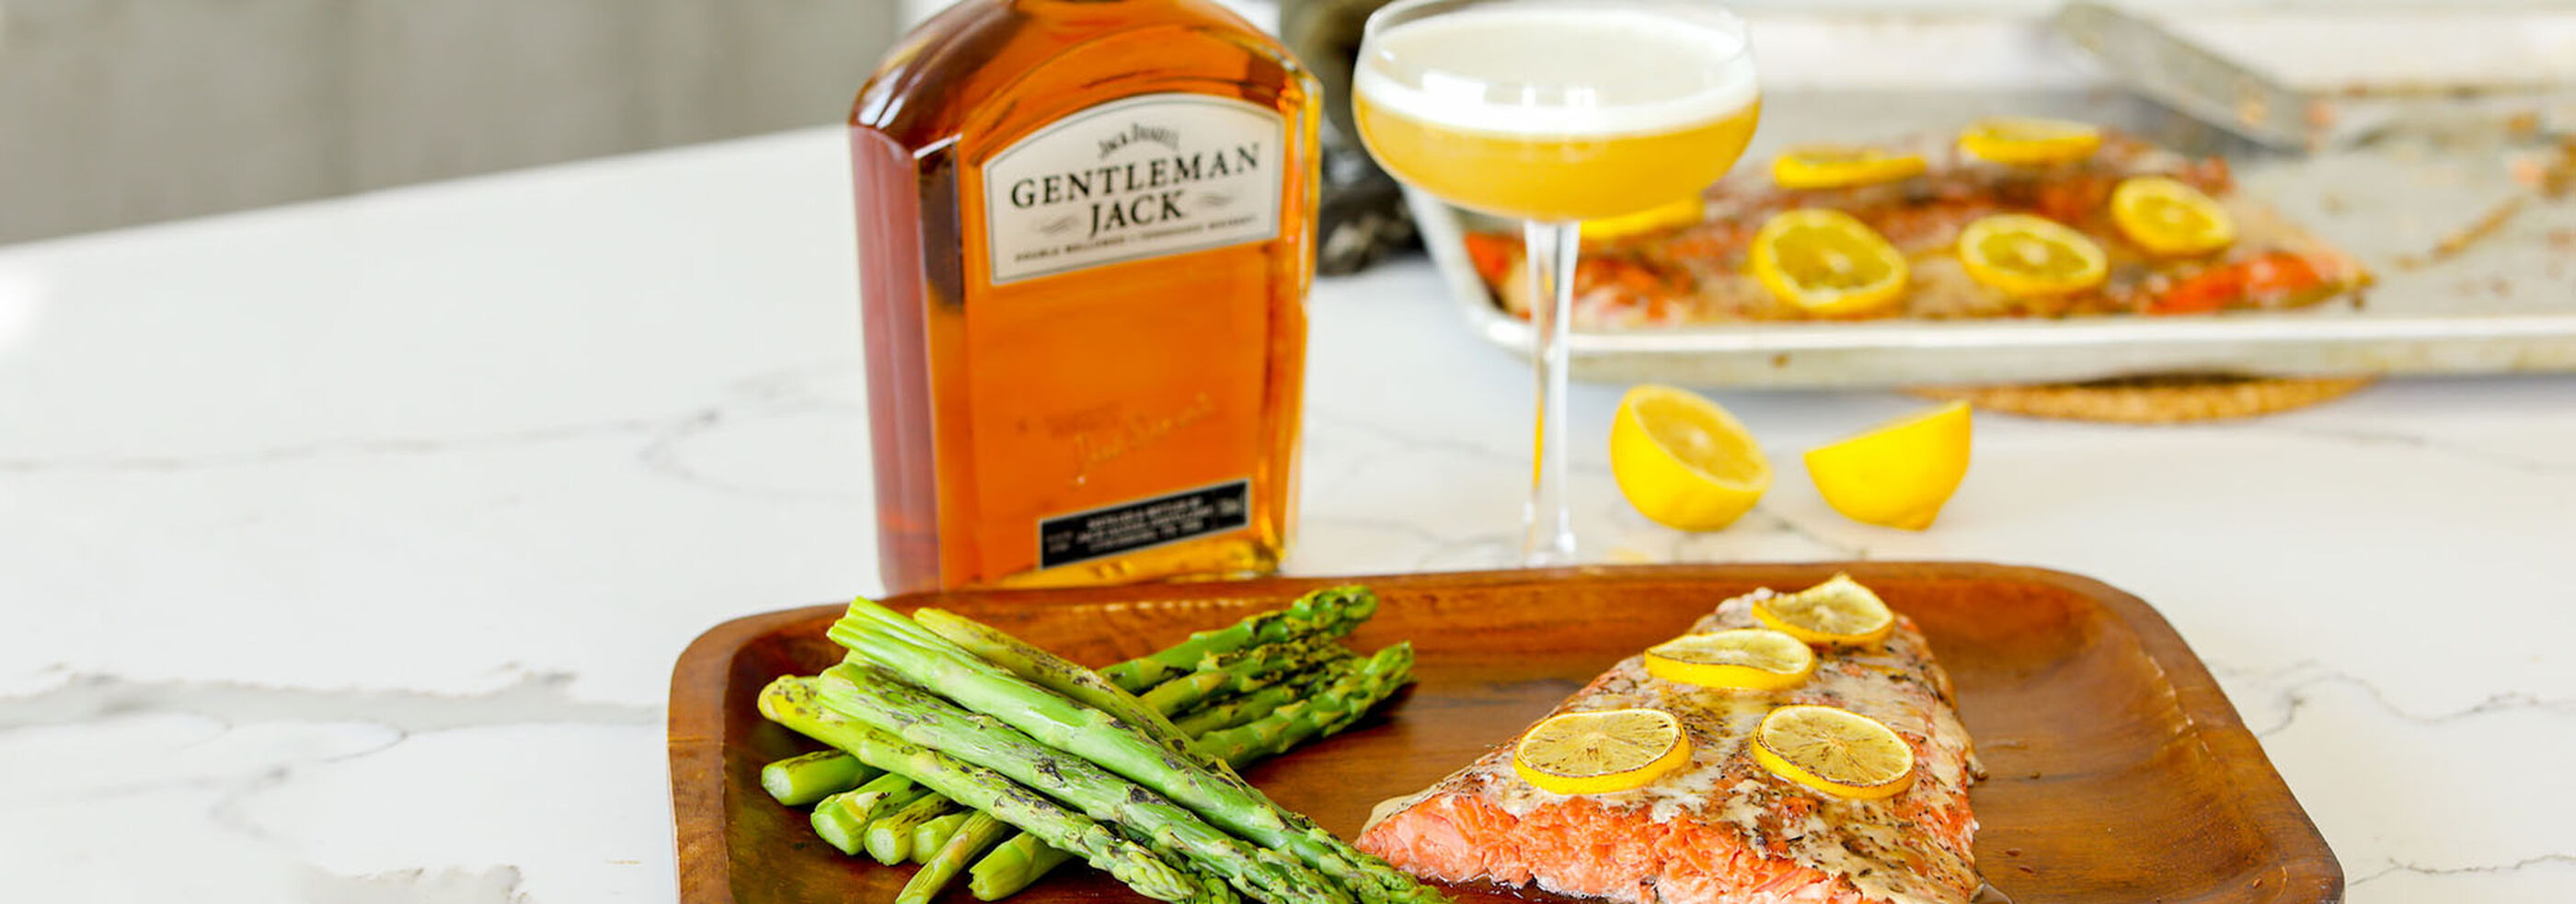 Gentleman Jack's bottle with salmon